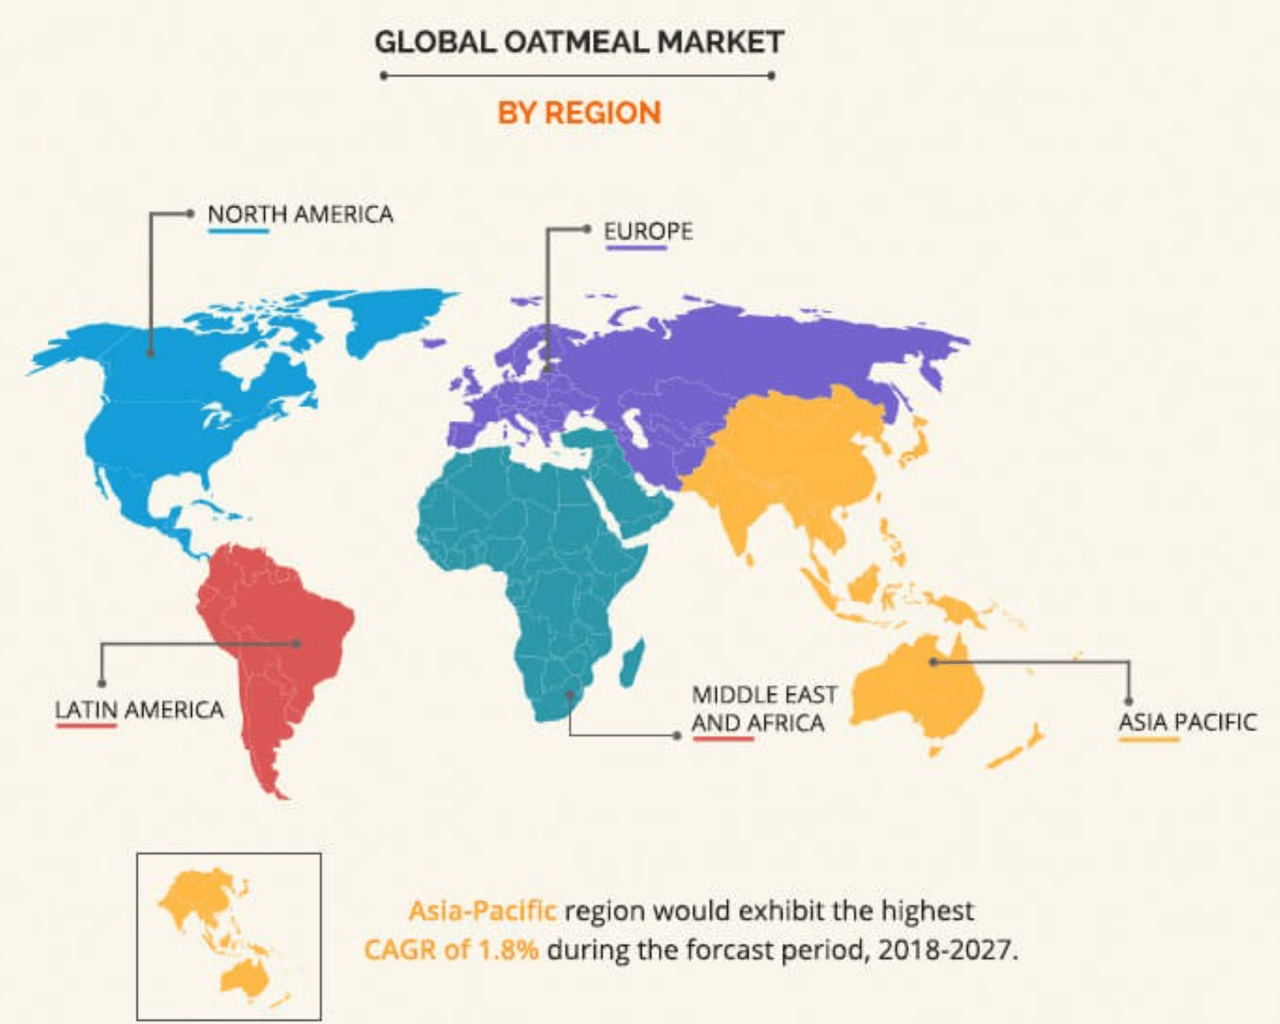 Global Oatmeal Market by Region